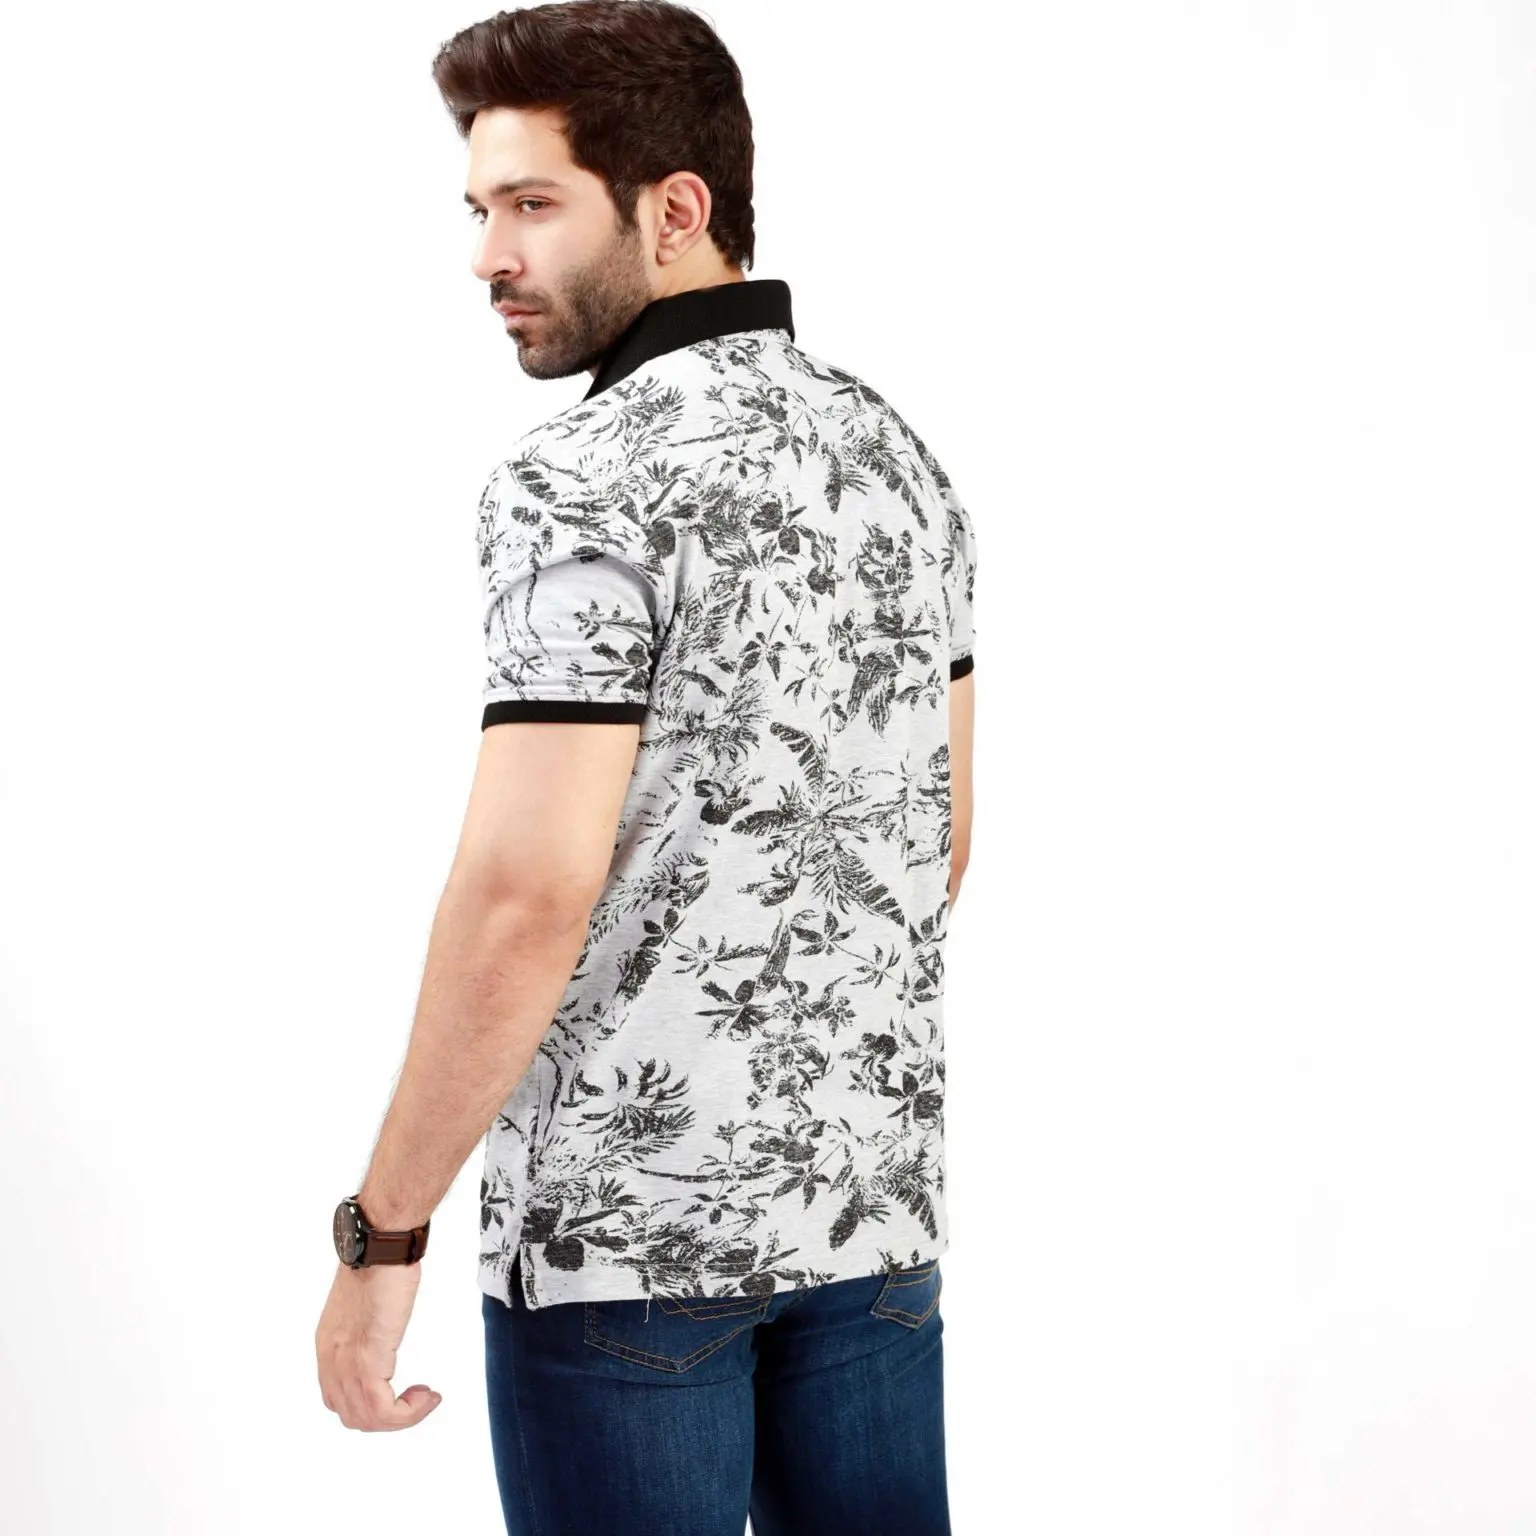 Mới nhất nóng bán Custom made OEM dịch vụ chất lượng cao cotton t Shirts thiết kế mới men Golf Polo Shirts For Men